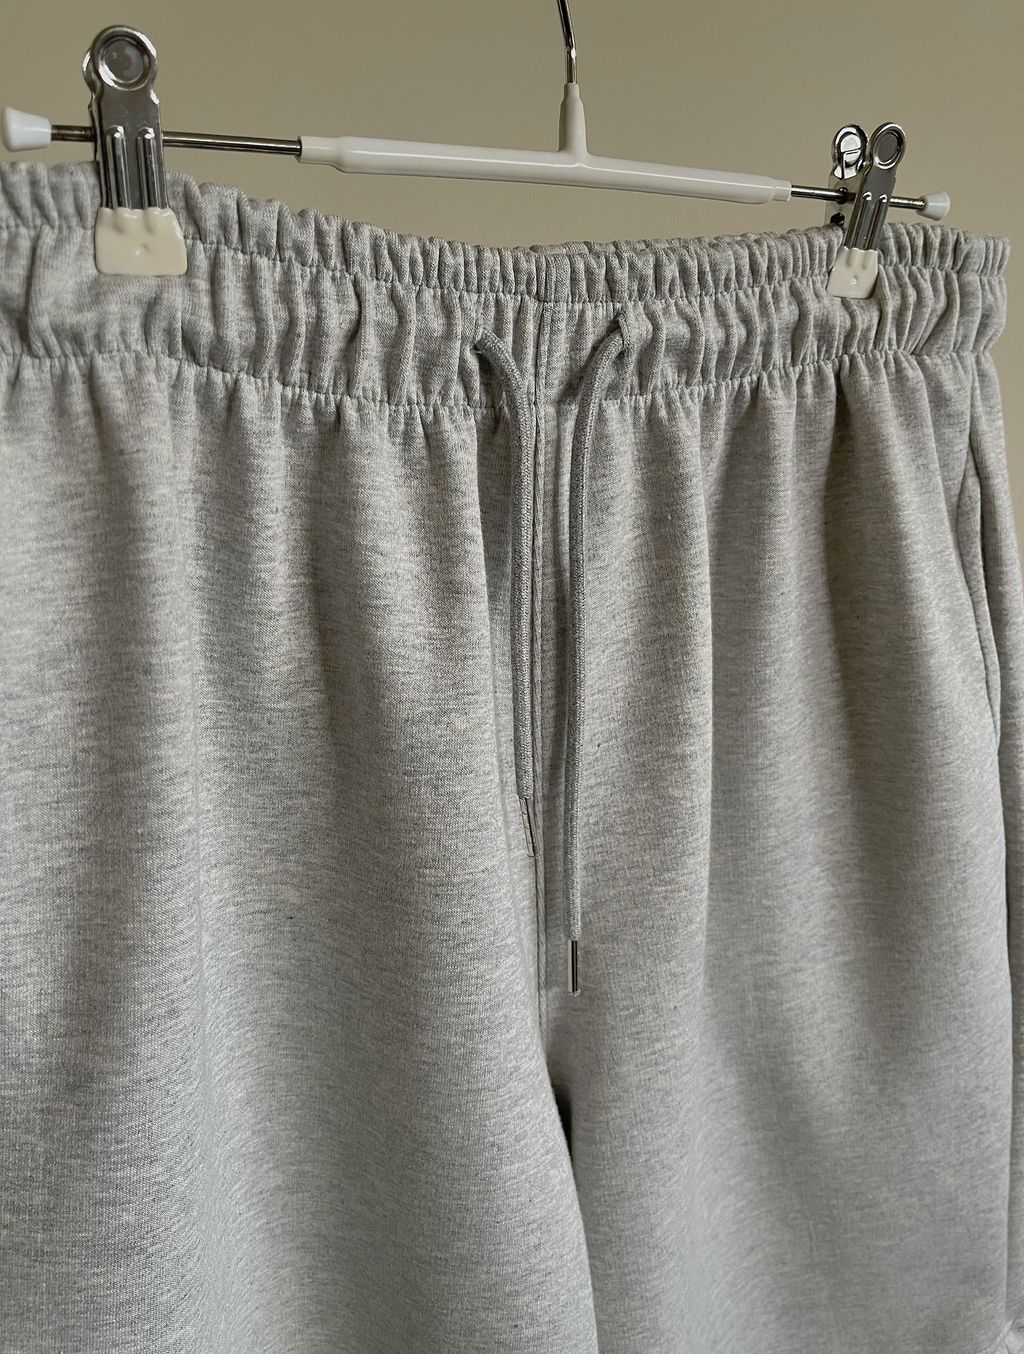 OPPAKOREA 綁帶及膝百慕達棉短褲 (3色) (挺拔的棉料/可搭配套裝)